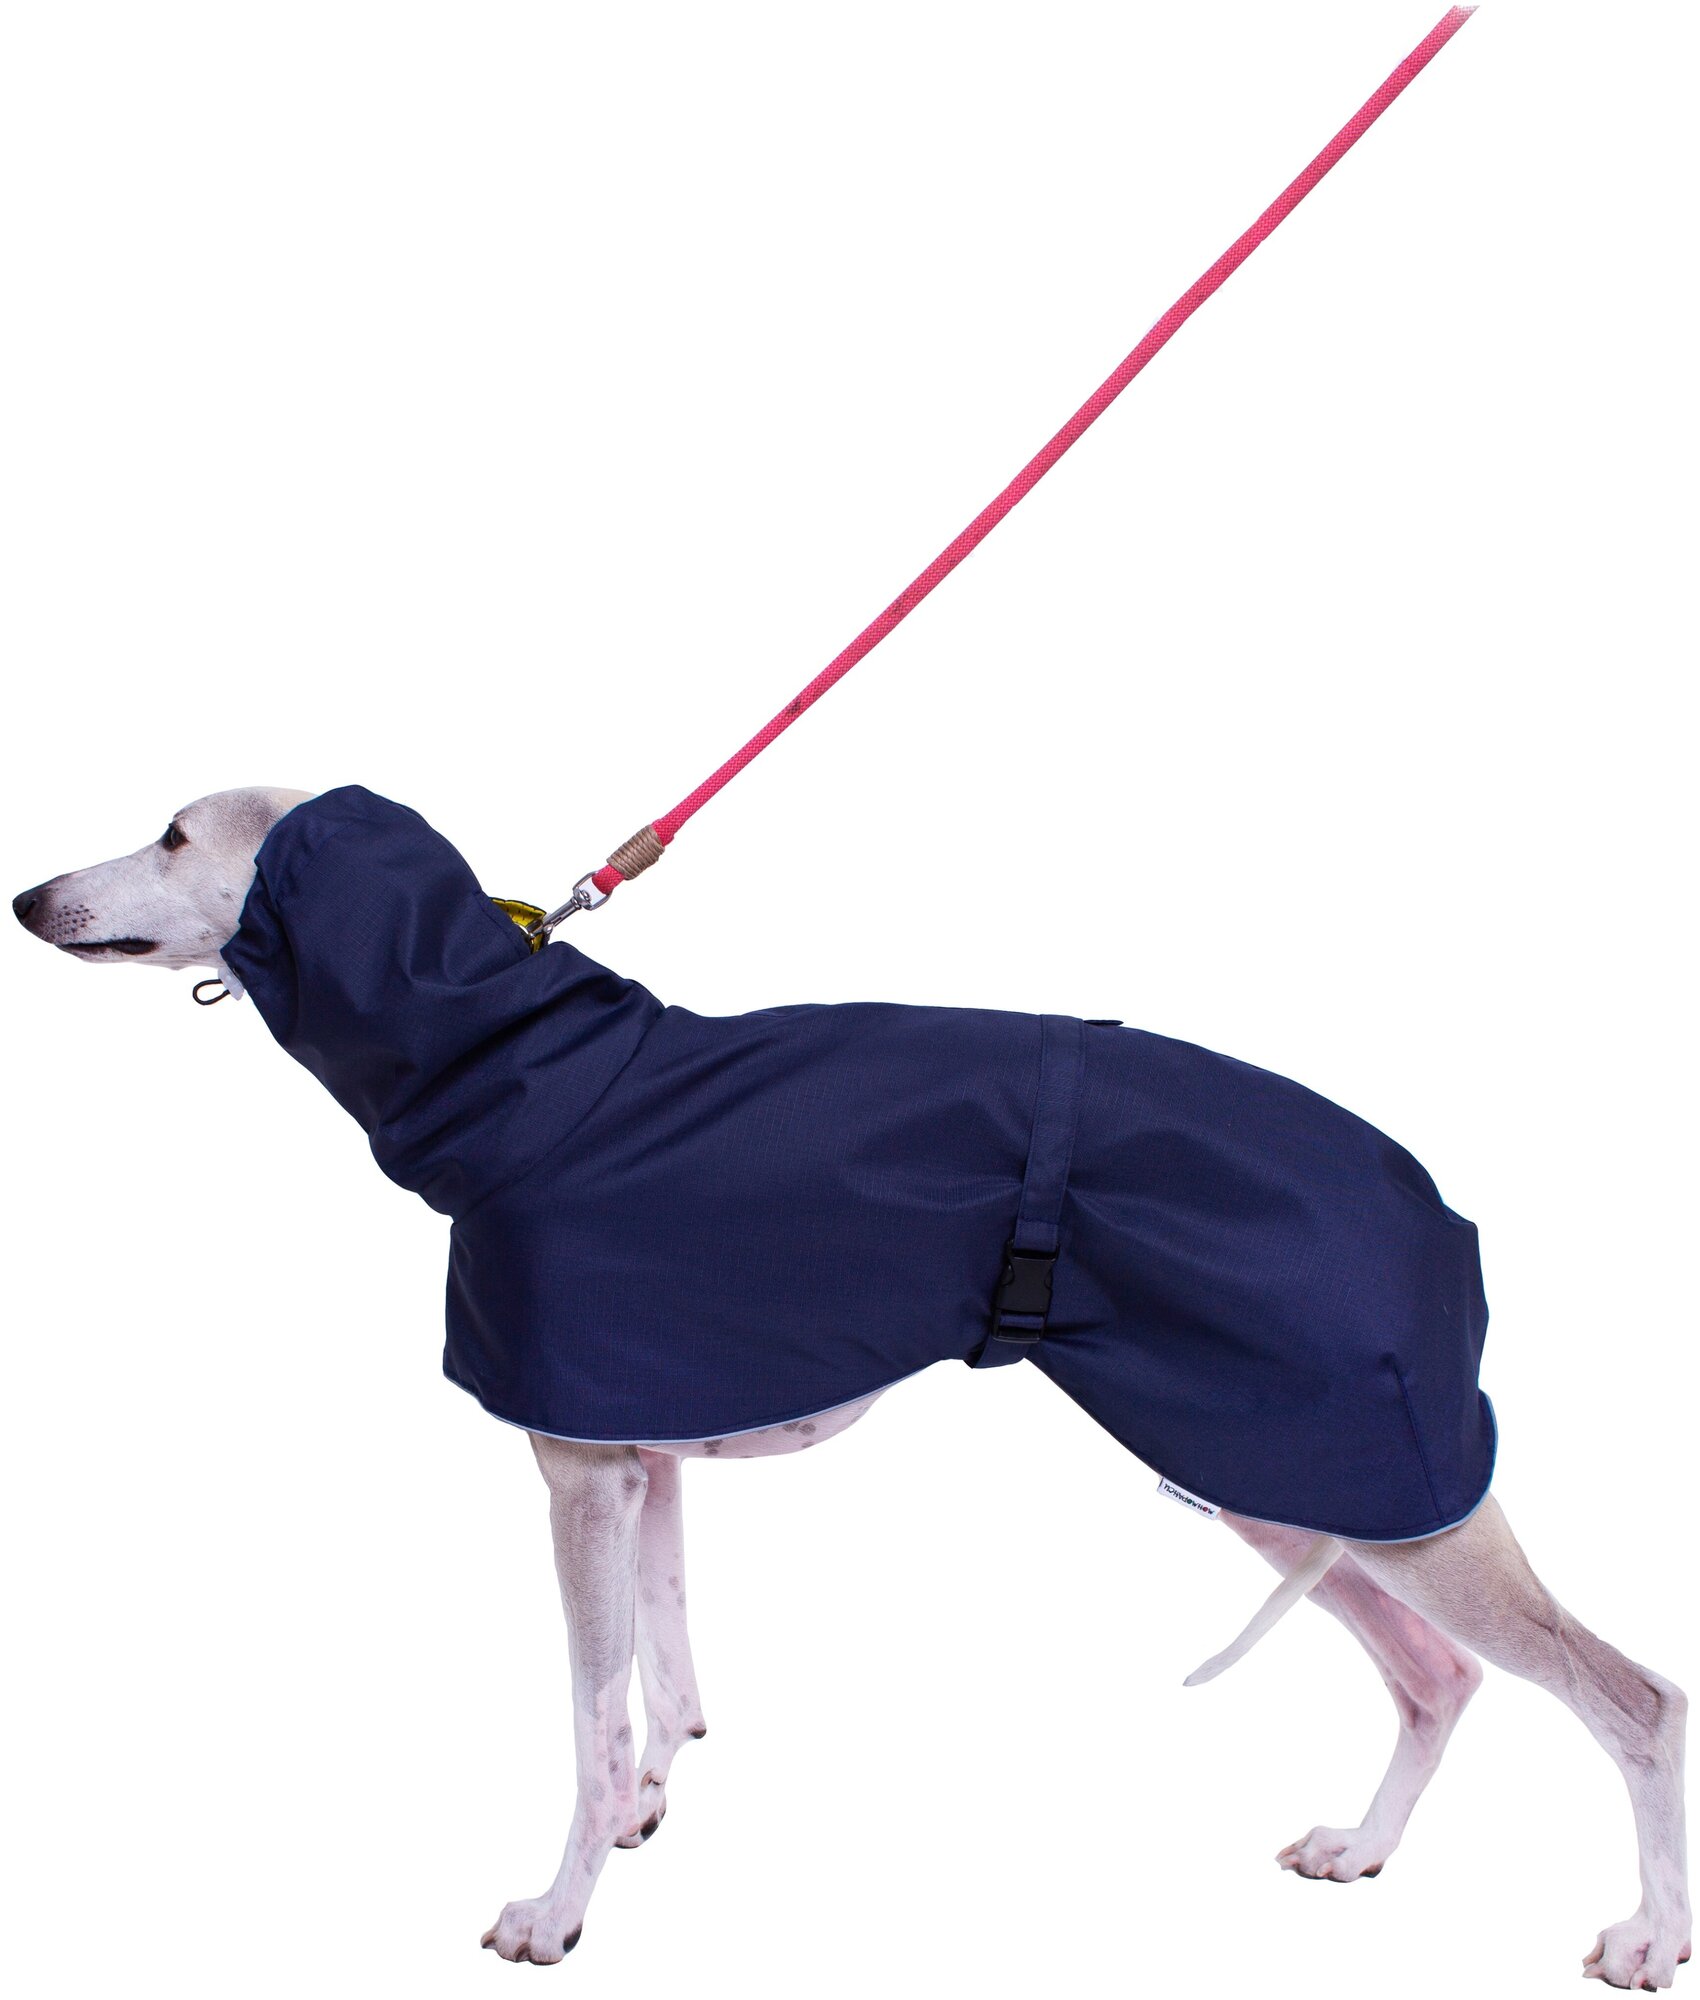 Дождевик для собак породы Уиппетов, синий, желтый, размер М2 . Дождевик для бесхвостых собак и с низкоопущенным хвостом